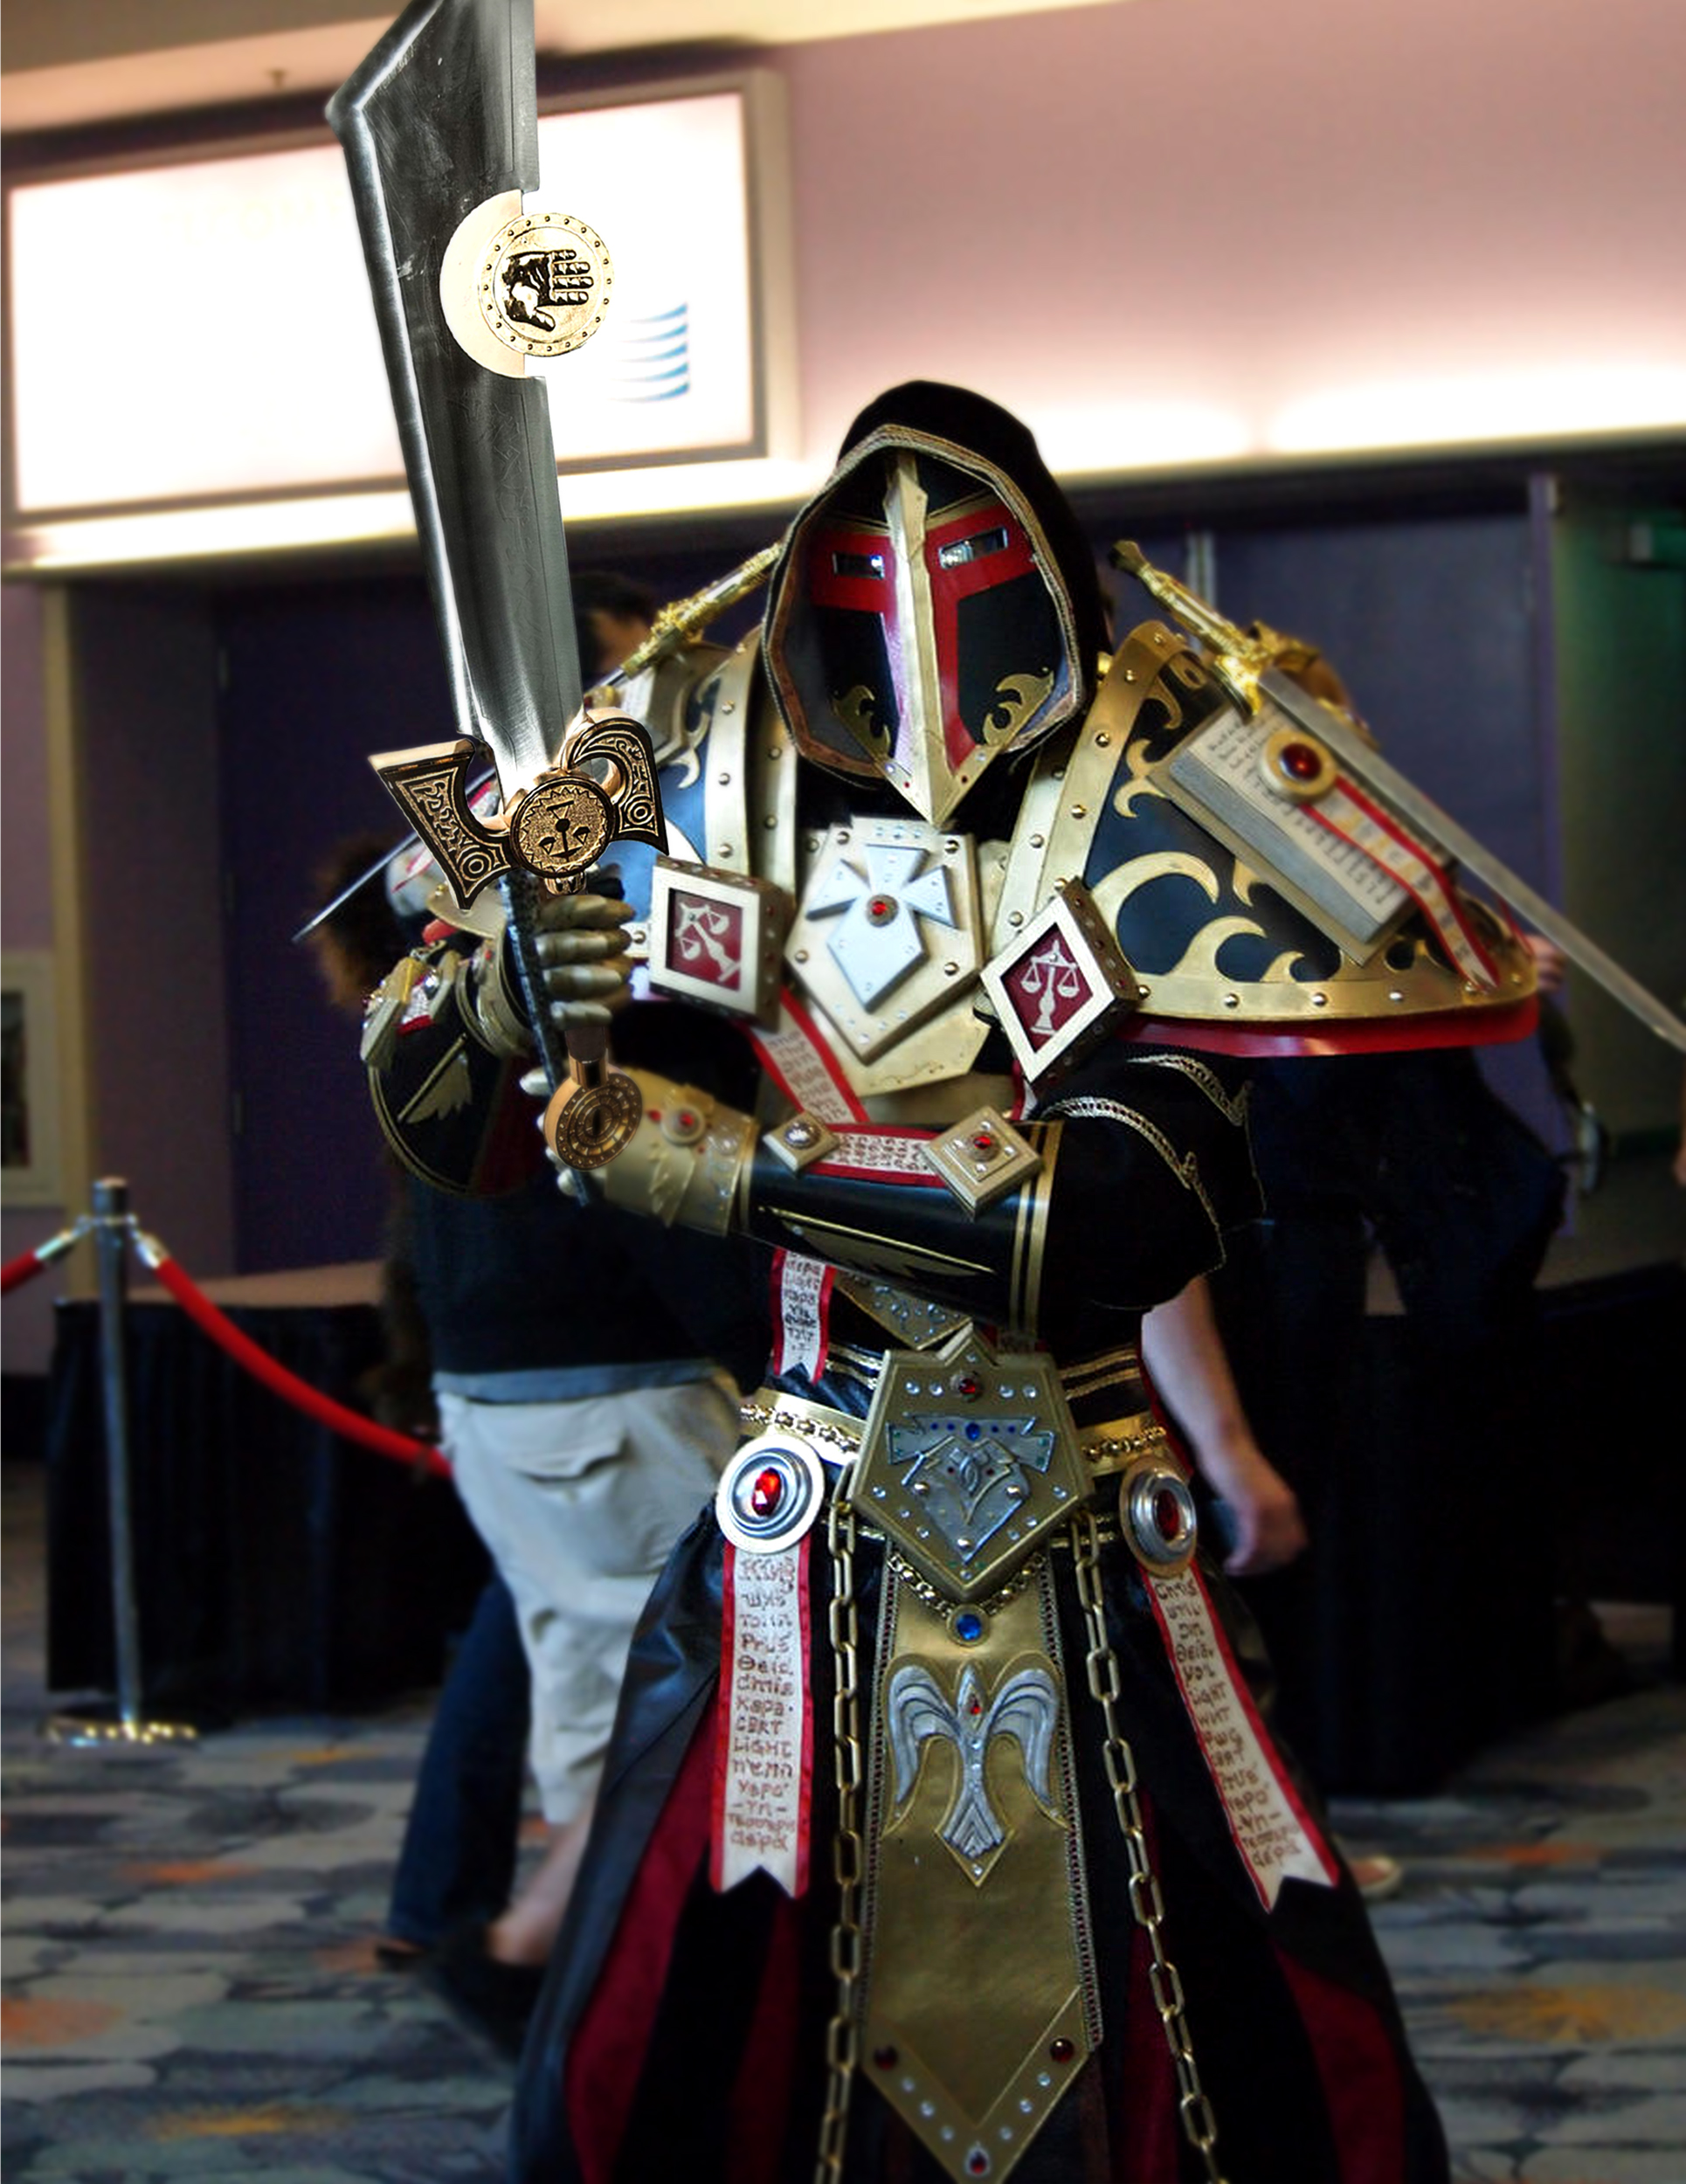 Warcraft Schwert - Ashbringer